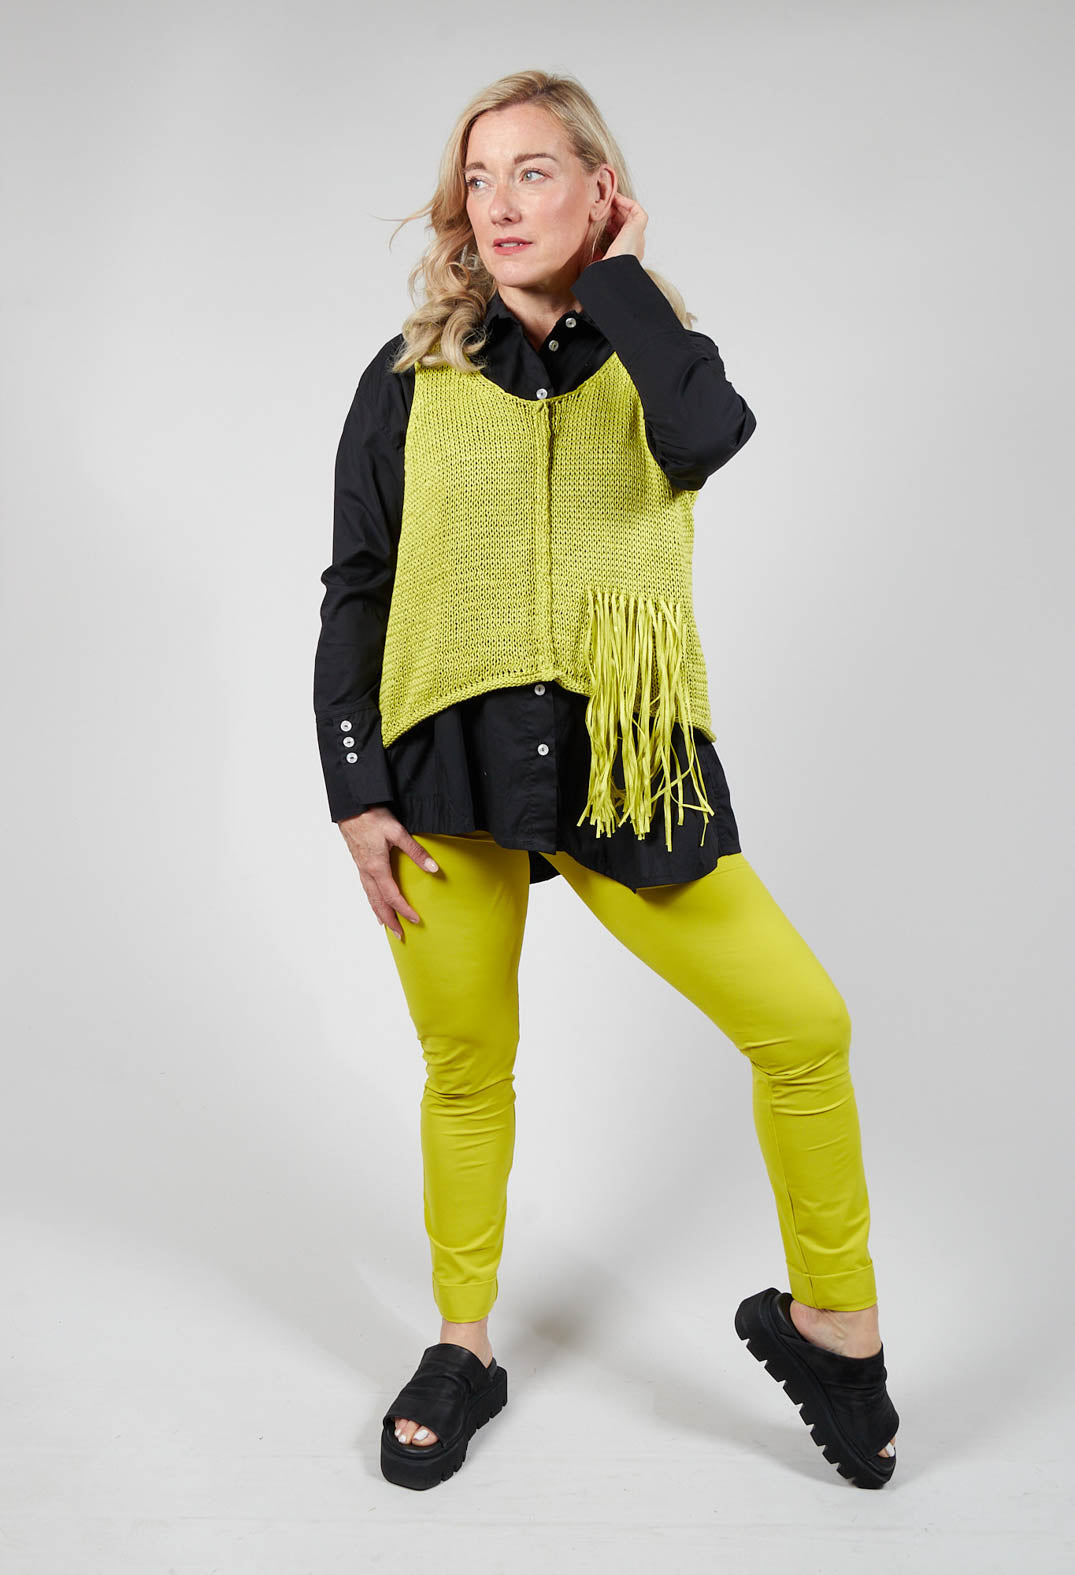 Sleeveless Knitted Vest in Lemon